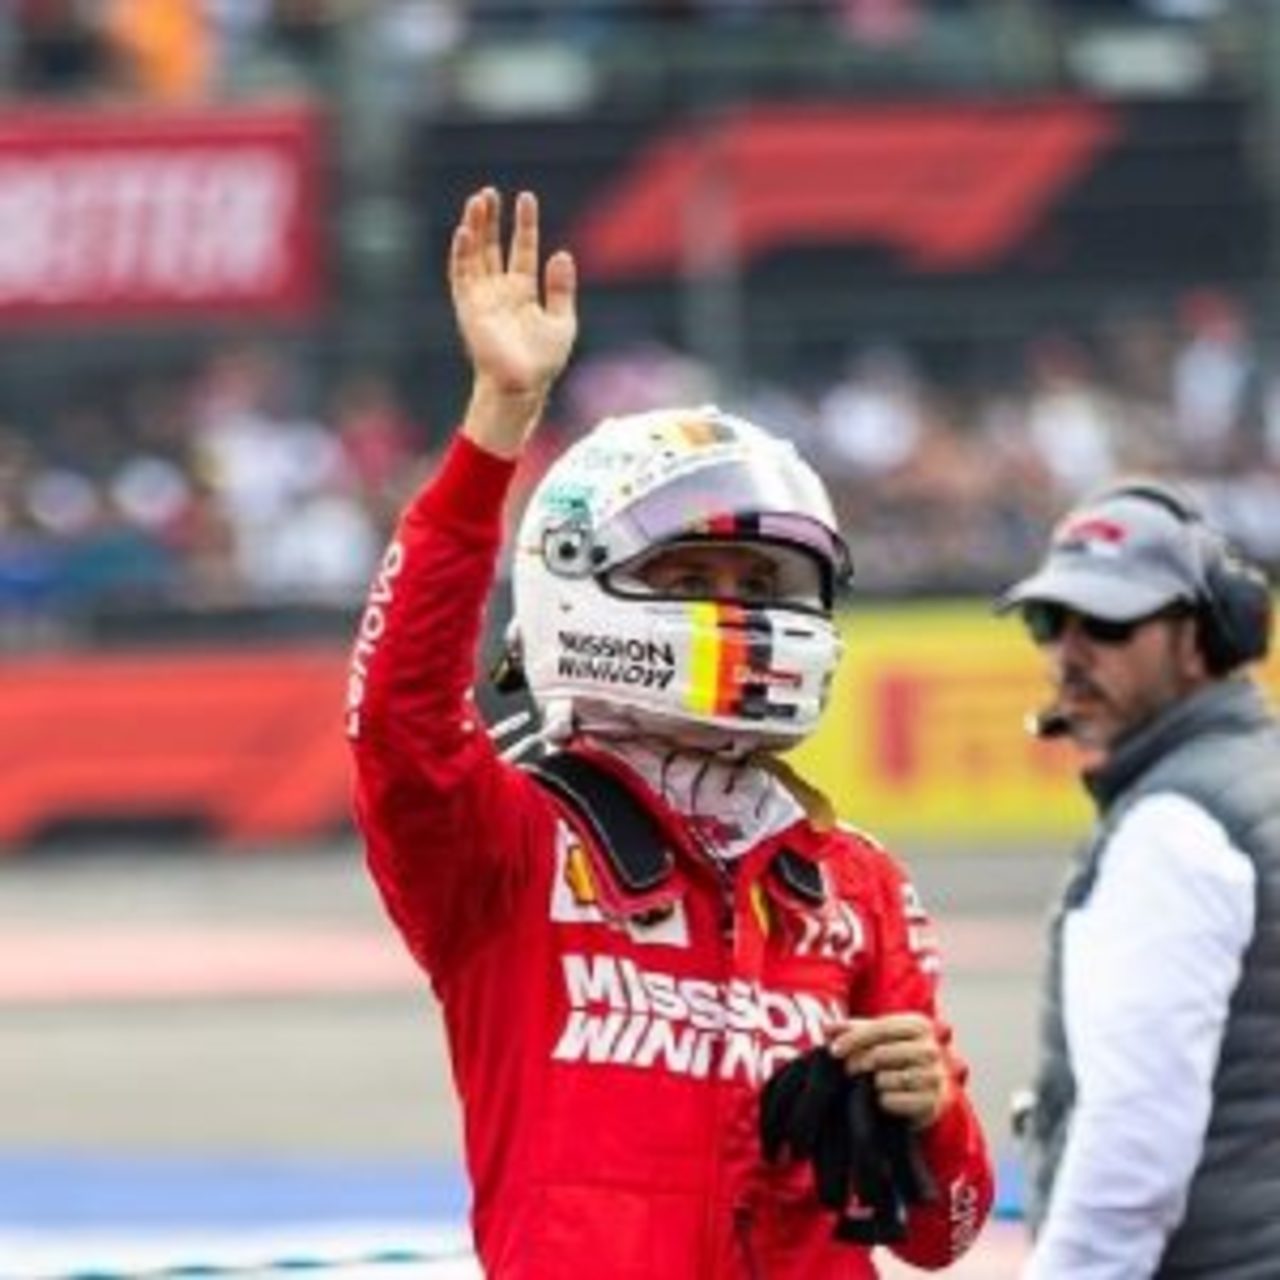 Vettel reconoce haber esperado más en clasificación